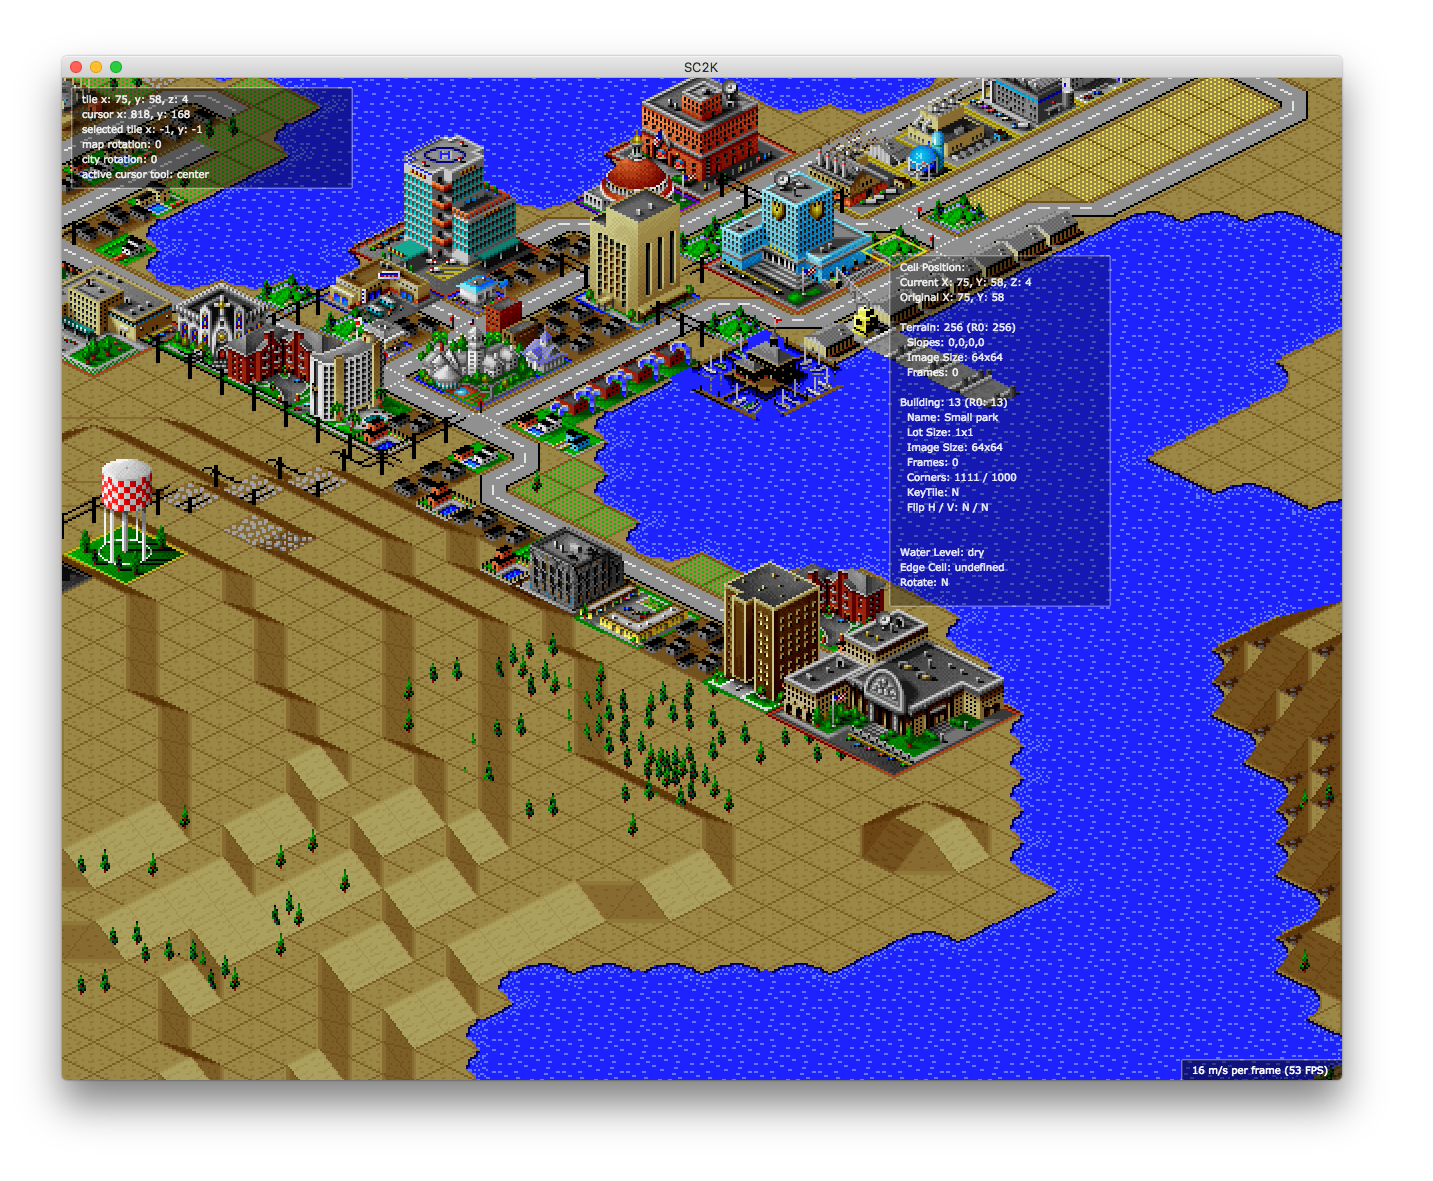 Capture d'écran du jeu OpenSC2K montrant une ville en développement